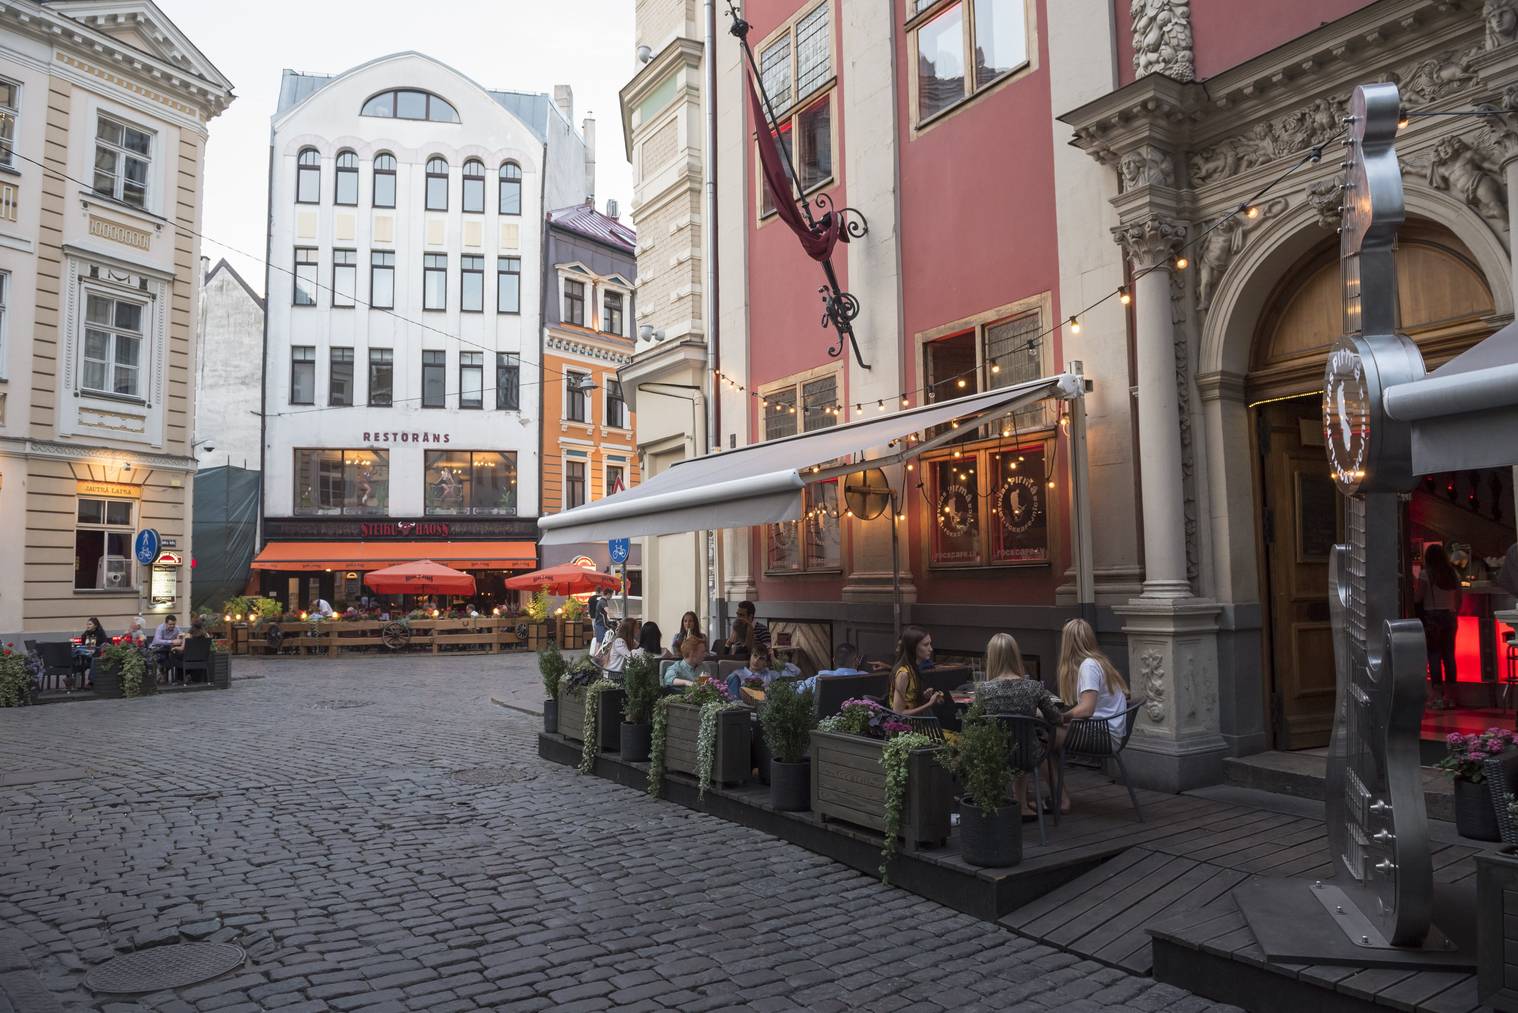 Auch wenn Riga eher im Norden liegt, kann man dort auch draussen seinen Kaffe geniessen. (Bild: istock)